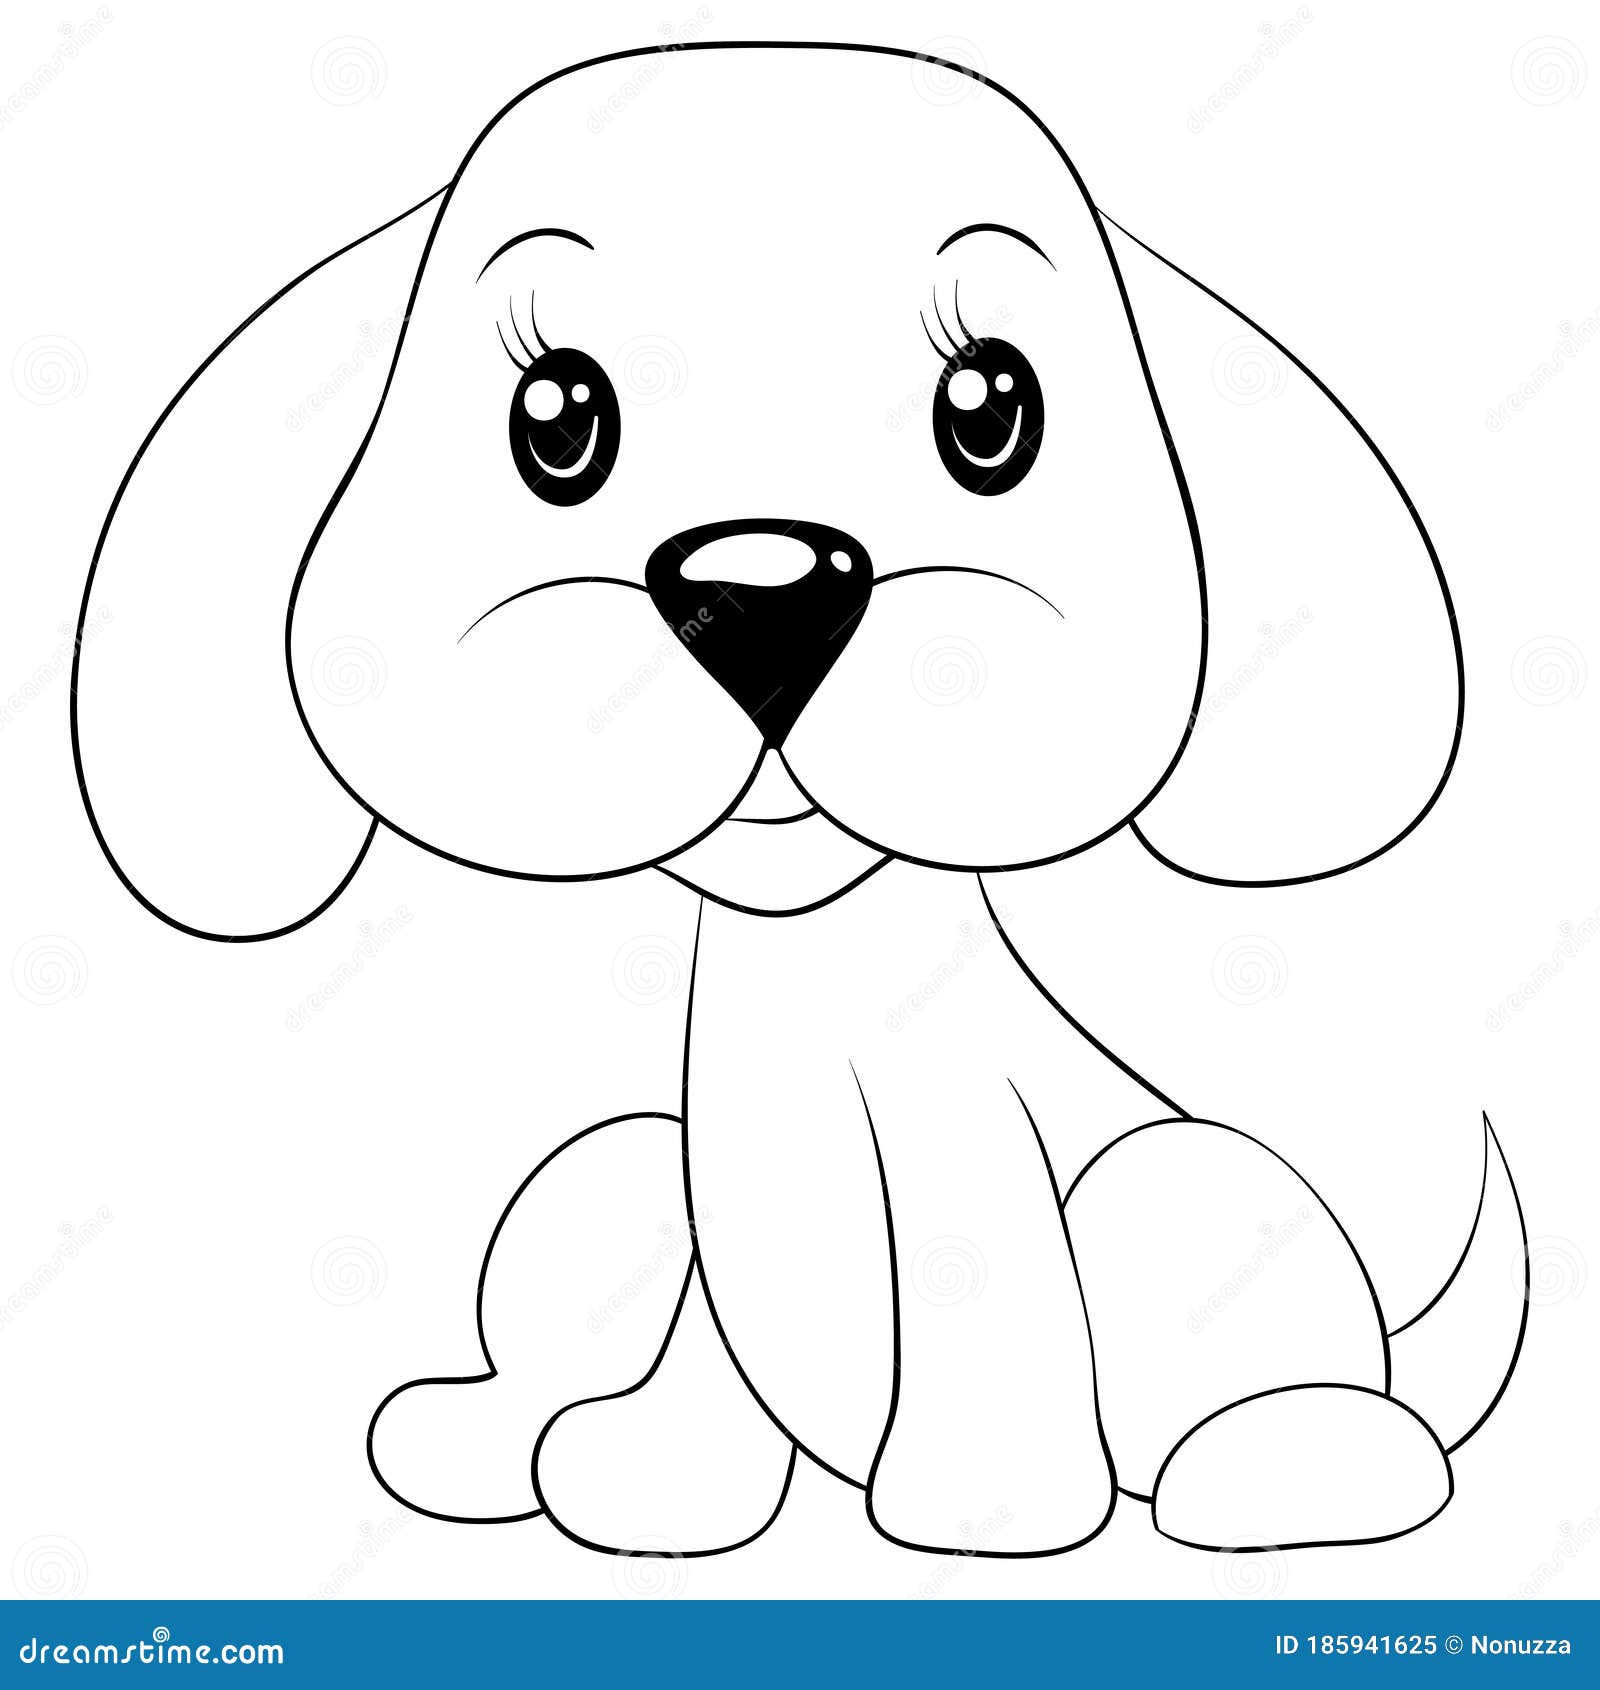 Cachorro : Desenhos para colorir, Desenhos para crianças, Jogos gratuitos  para crianças, Artes manuais para crianças, Vídeos para crianças, Leia,  Noviadades diárias do Hellokids